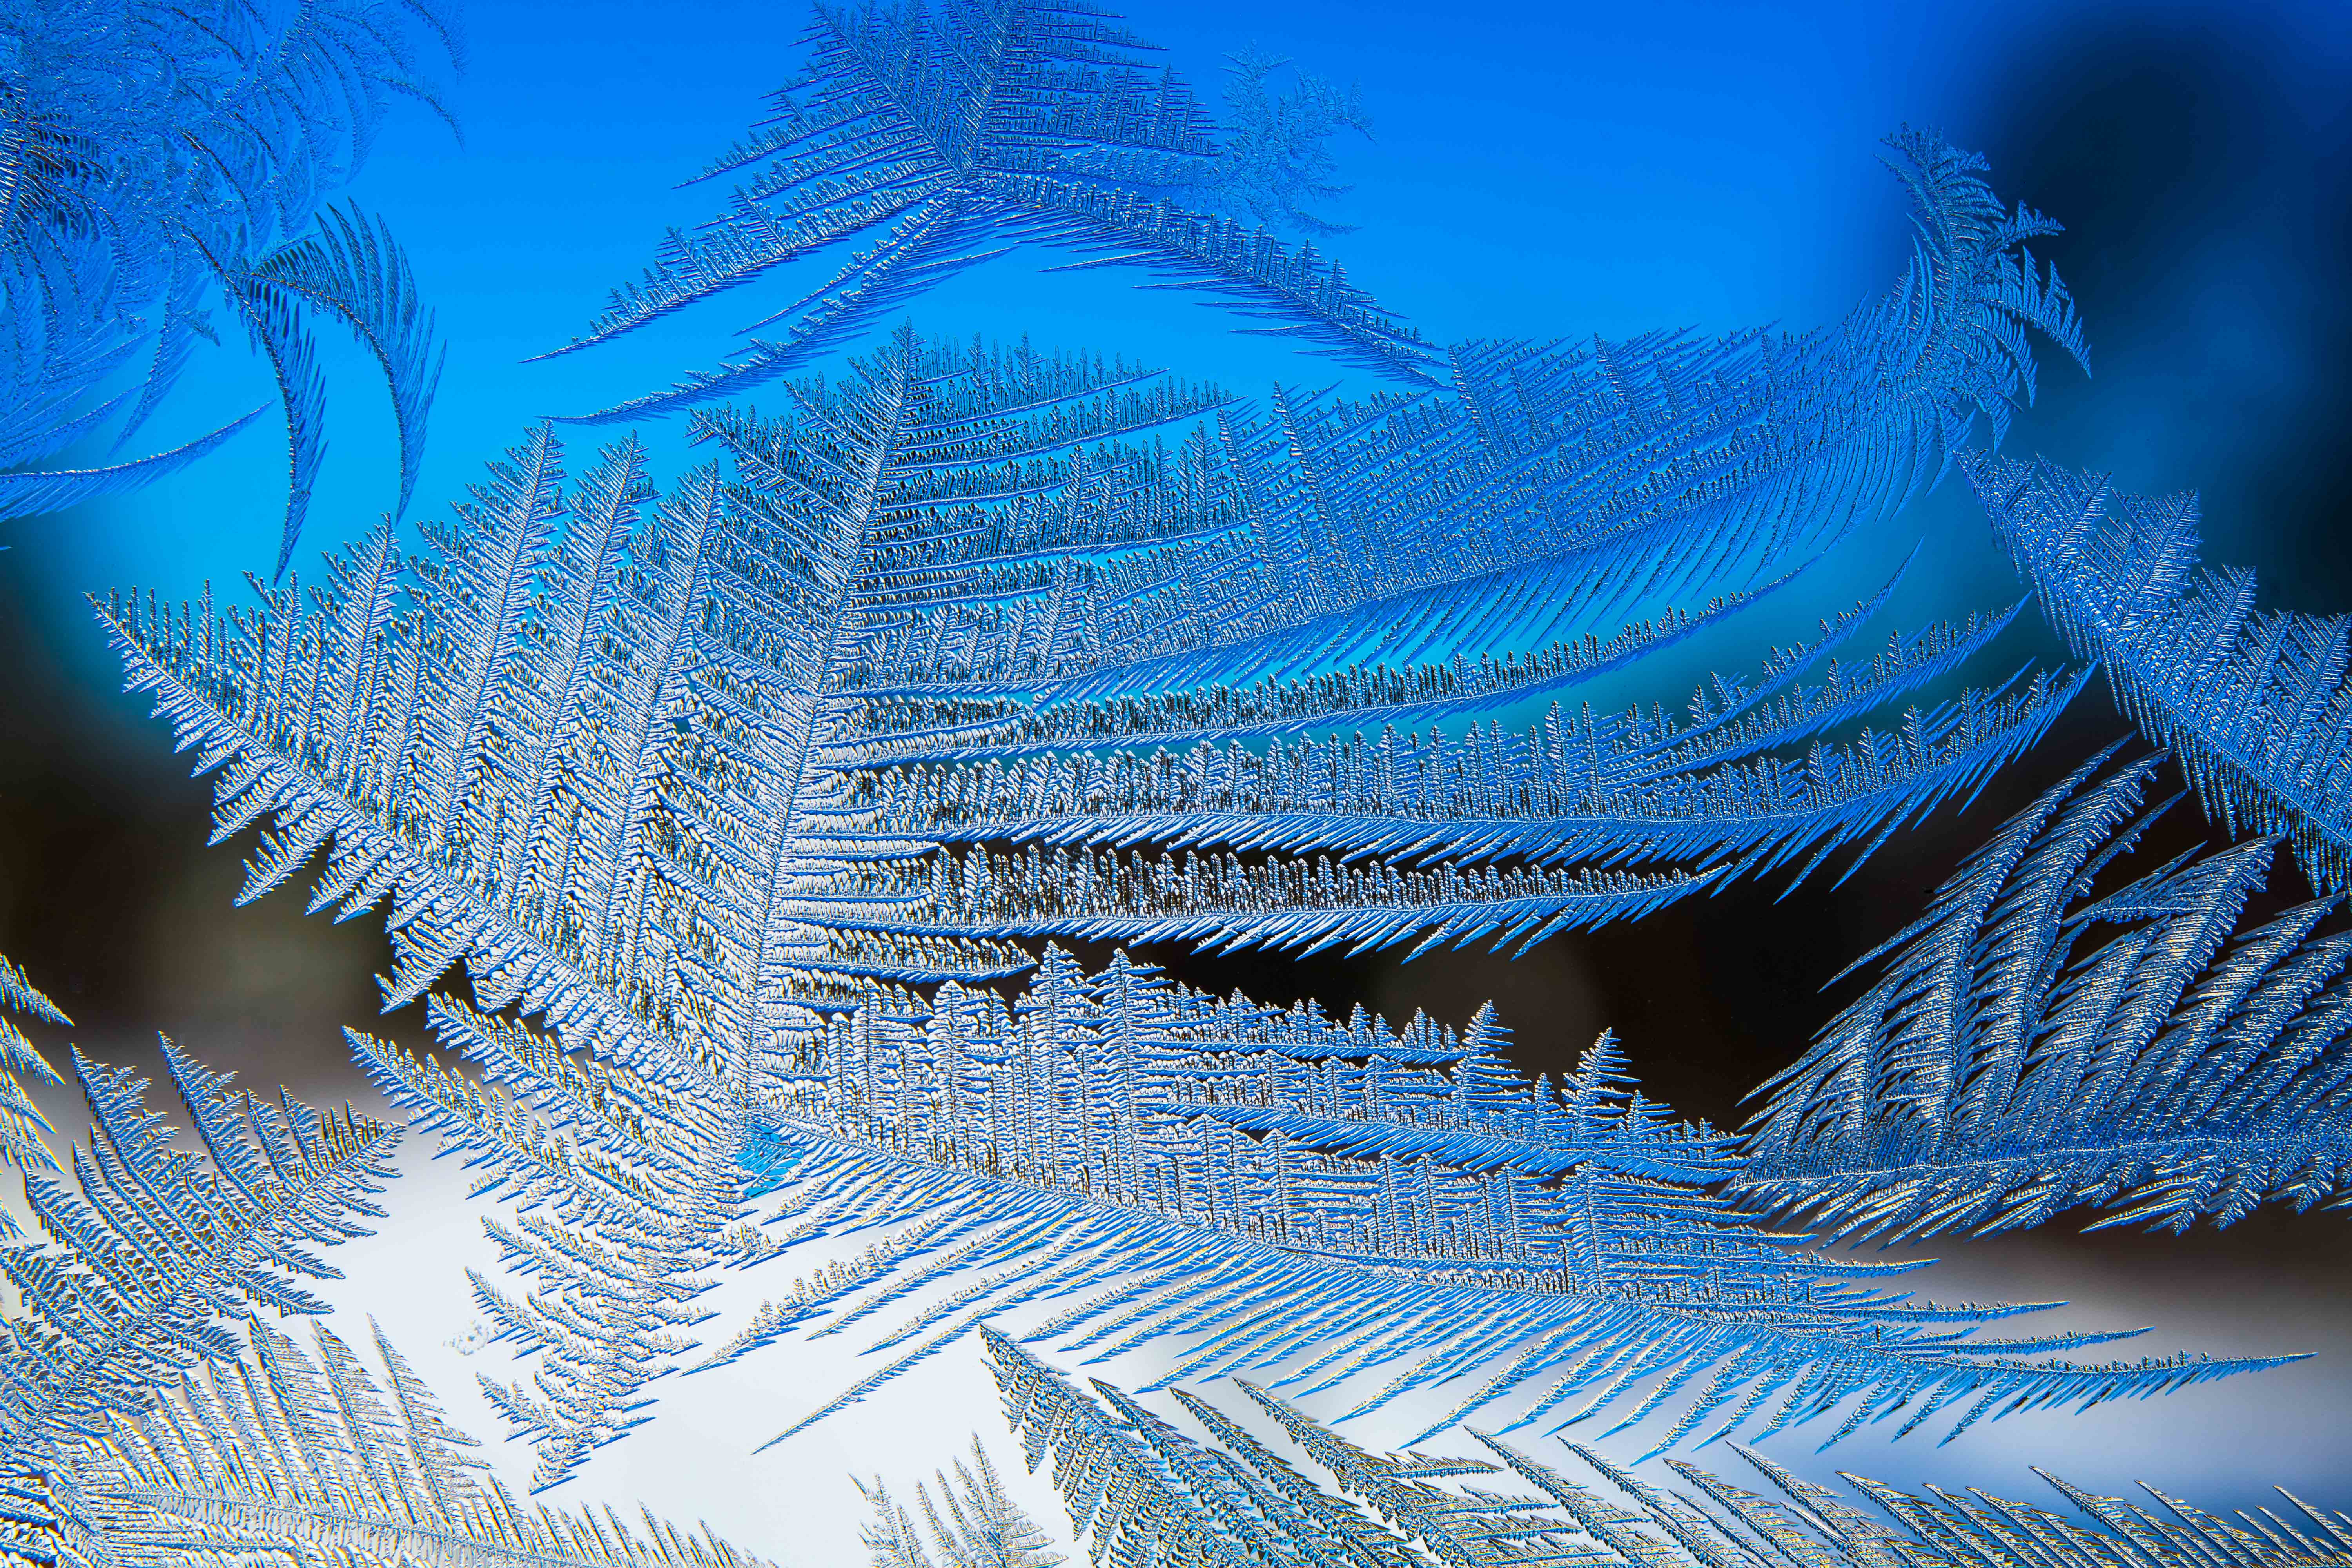 Frosty pattern on glass